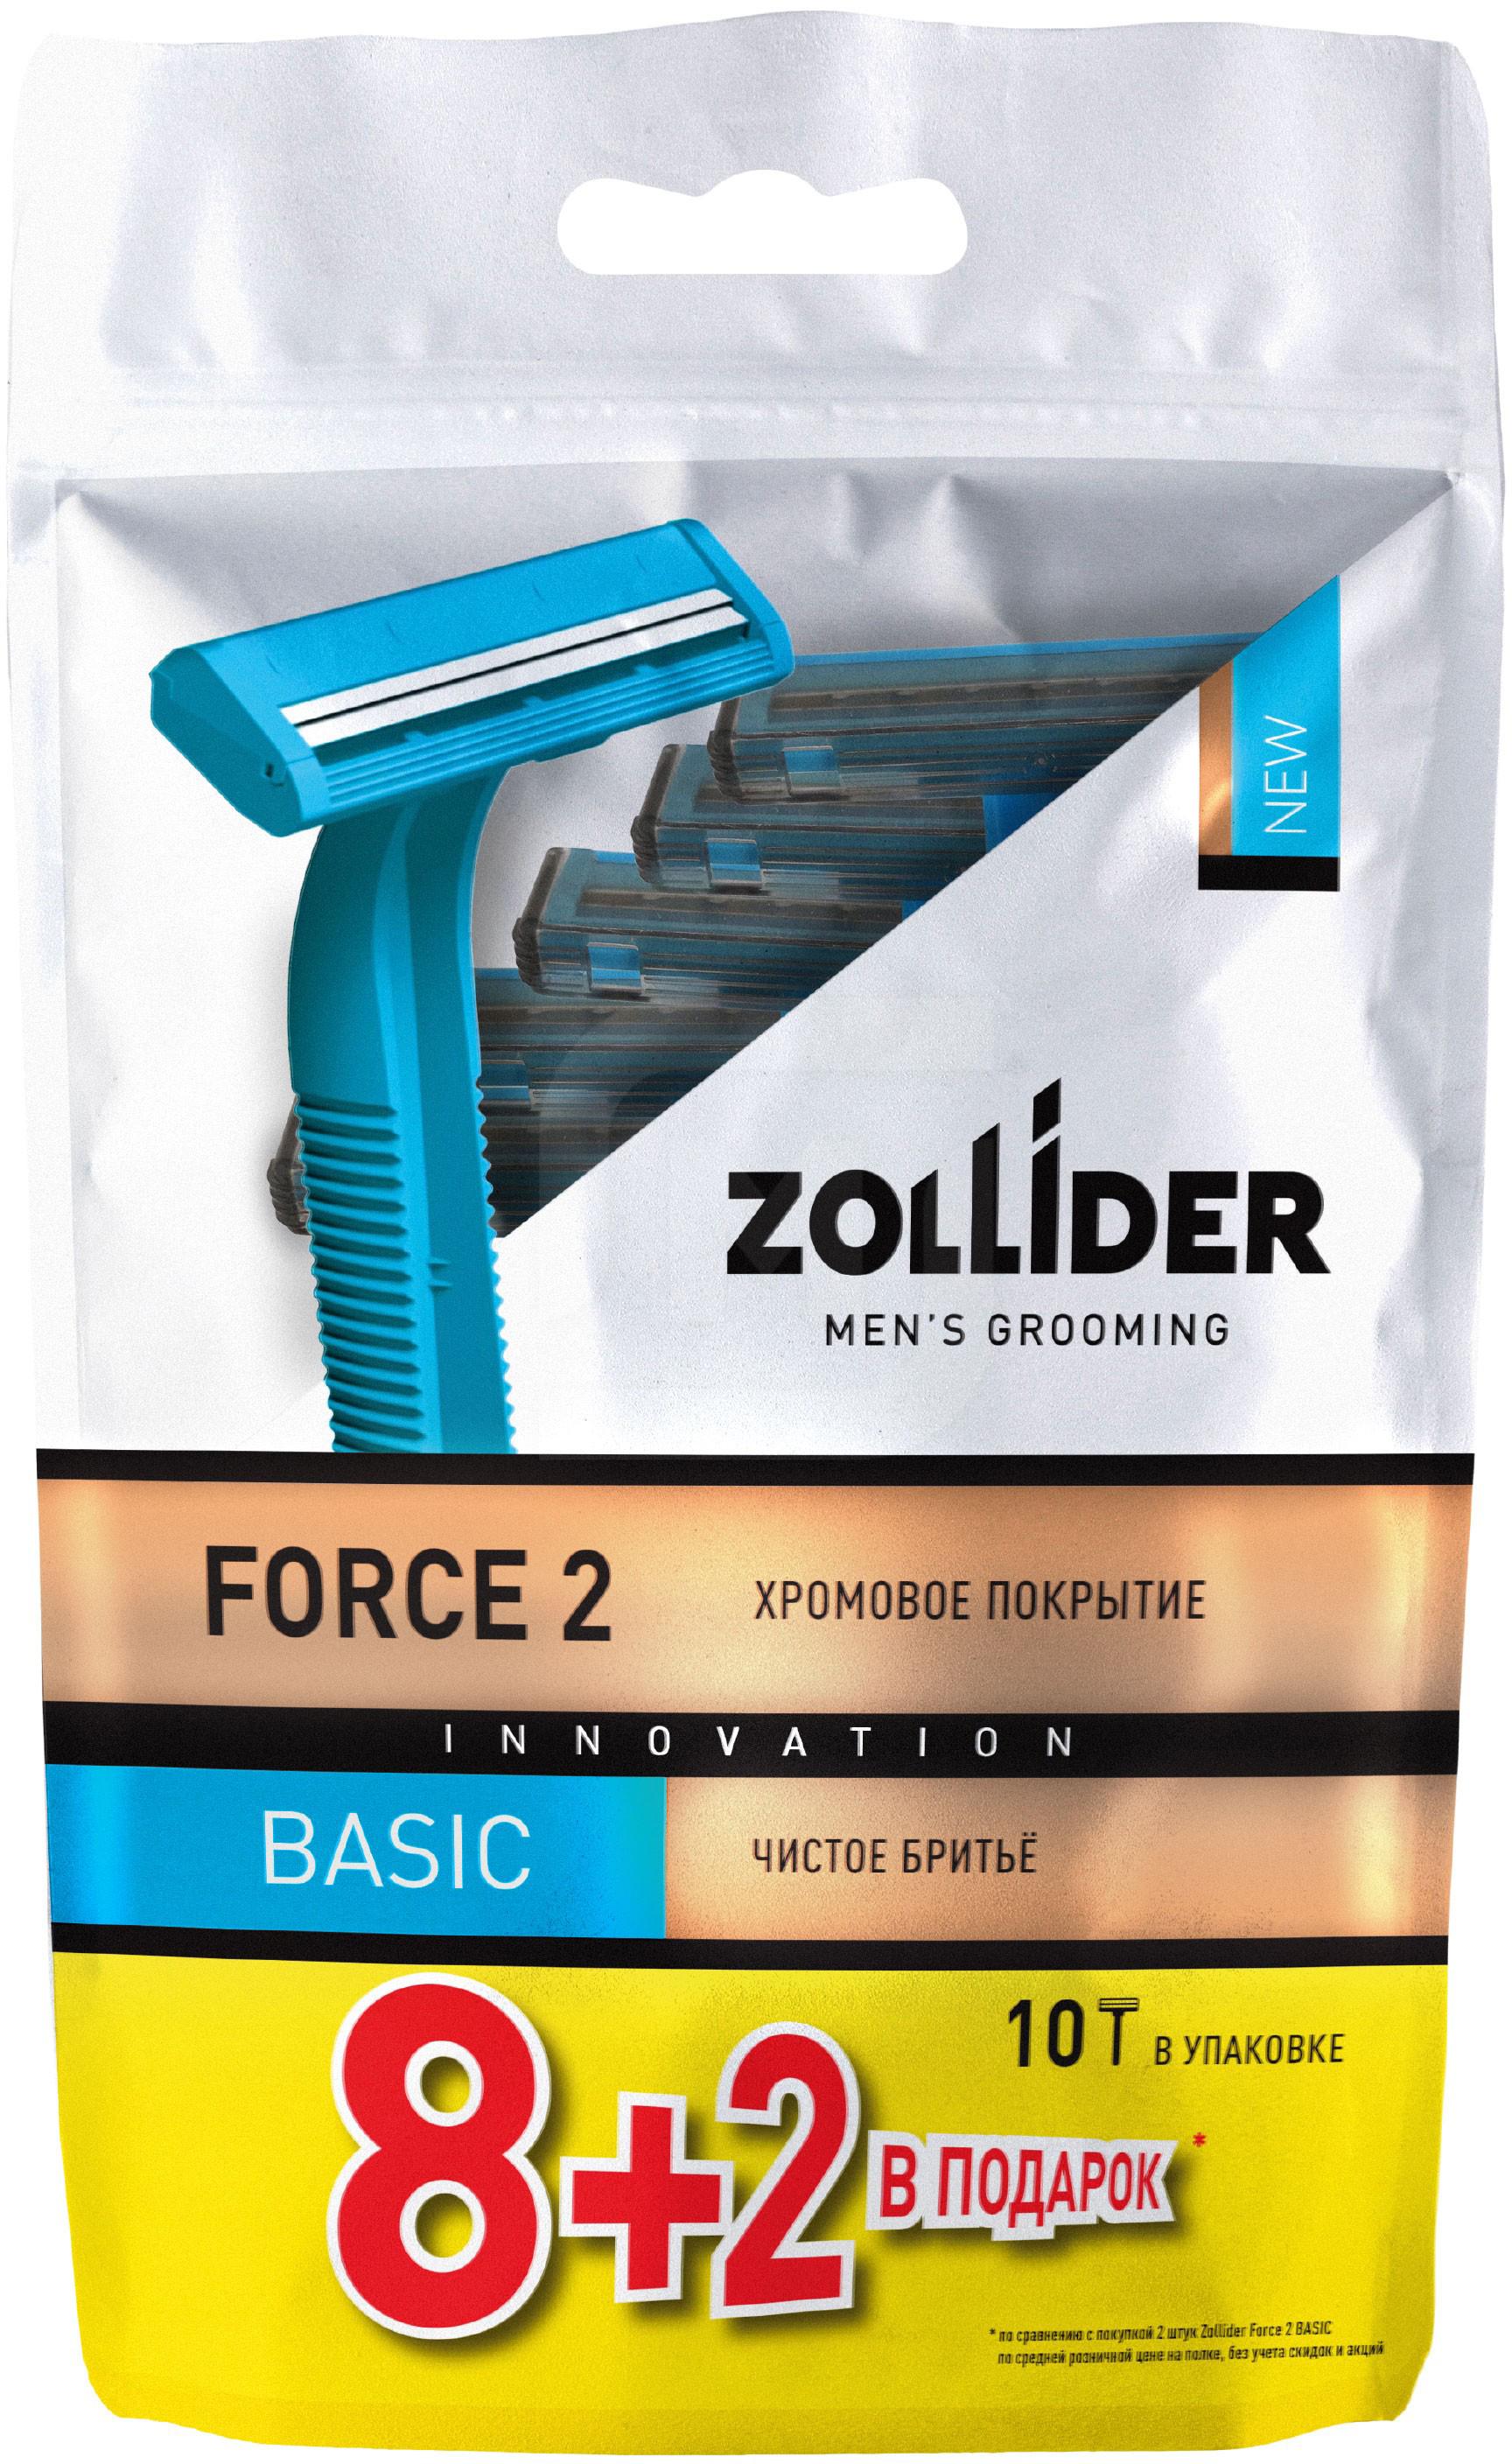 Бритвенные станки мужские Zollider Force 2 Basic одноразовые с двойными лезвиями 8 + 2 шт бритвенные станки мужские zollider force 2 pro одноразовые с двойными лезвиями 2 шт